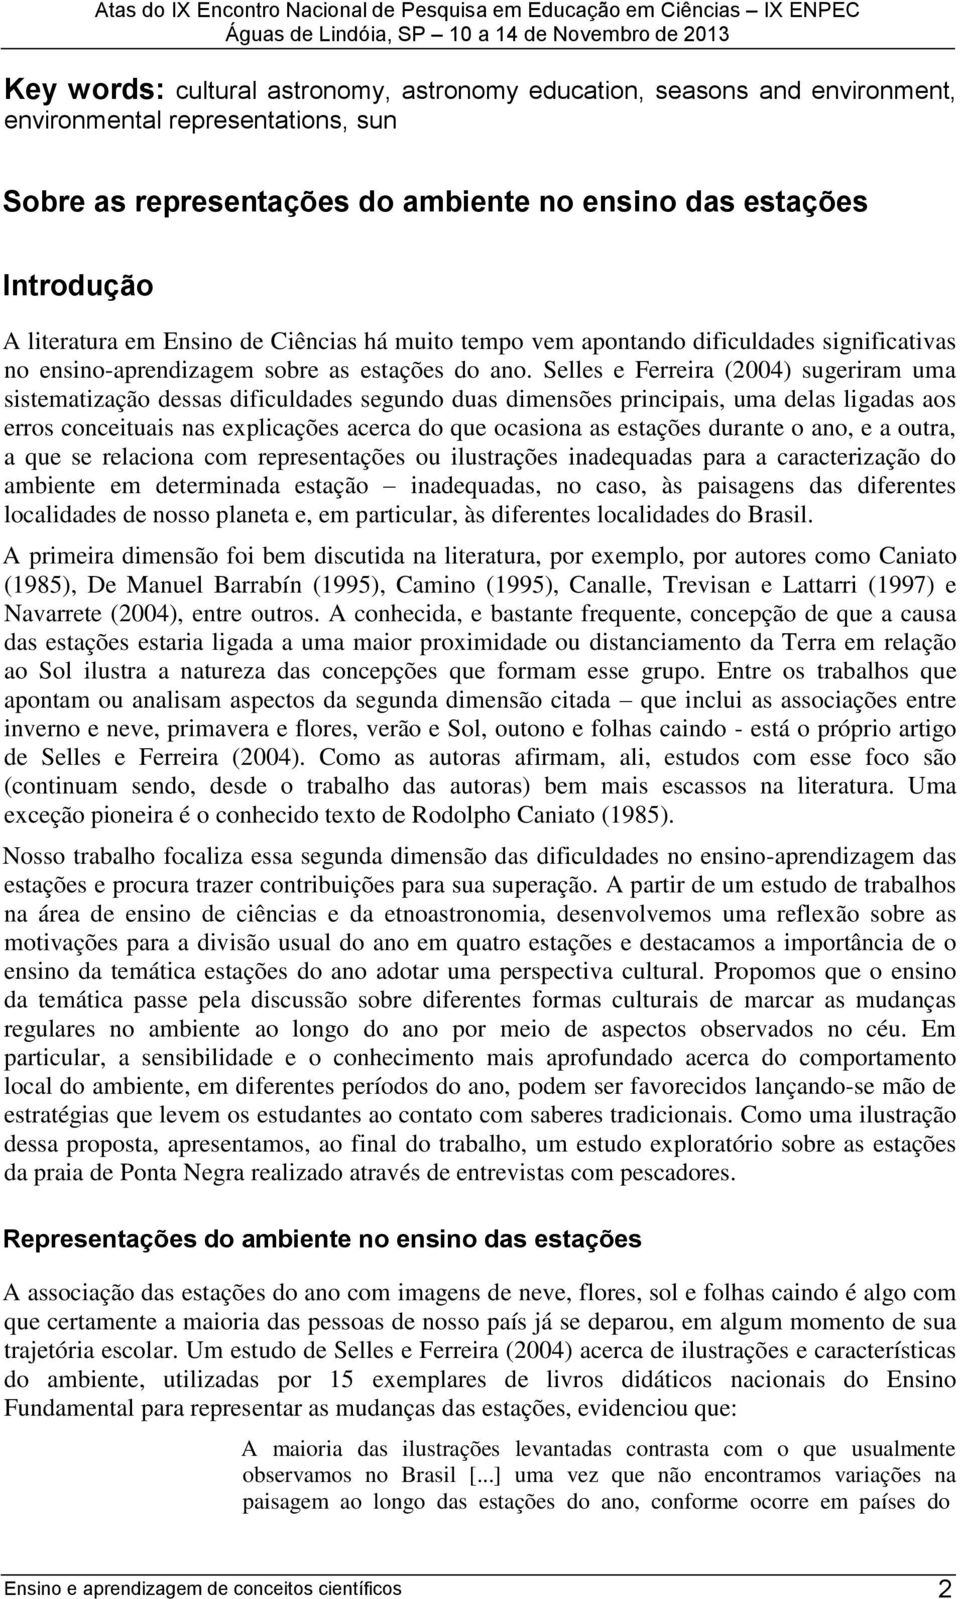 Selles e Ferreira (2004) sugeriram uma sistematização dessas dificuldades segundo duas dimensões principais, uma delas ligadas aos erros conceituais nas explicações acerca do que ocasiona as estações